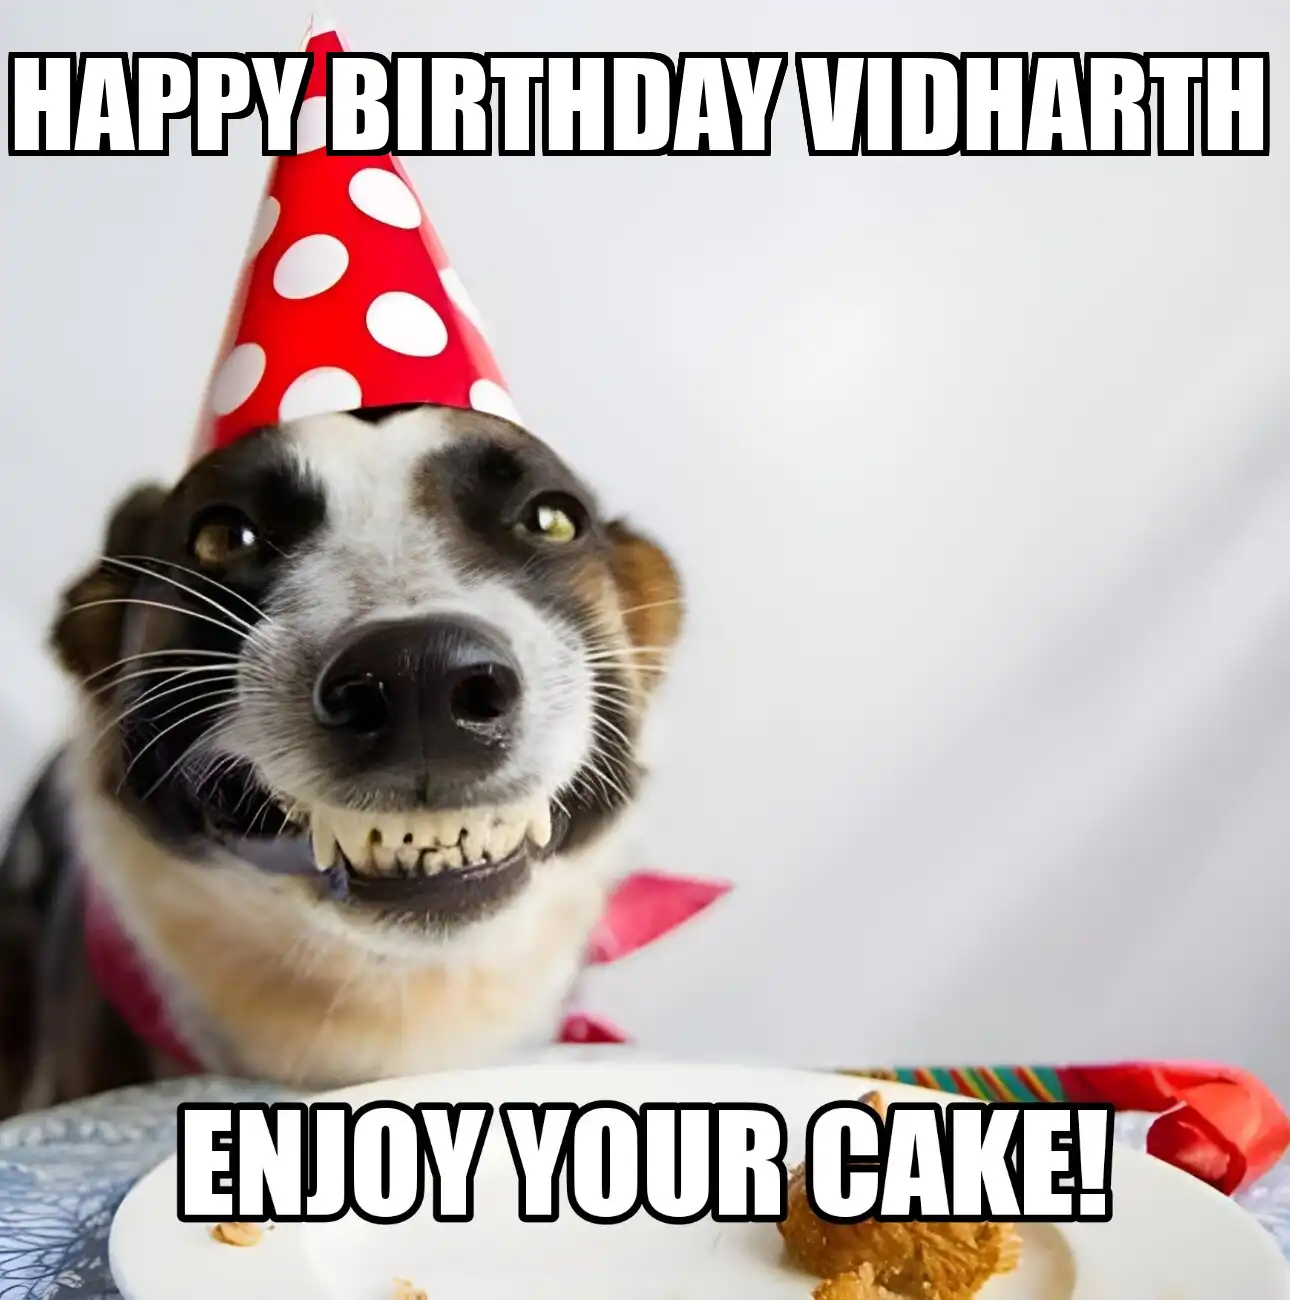 Happy Birthday Vidharth Enjoy Your Cake Dog Meme